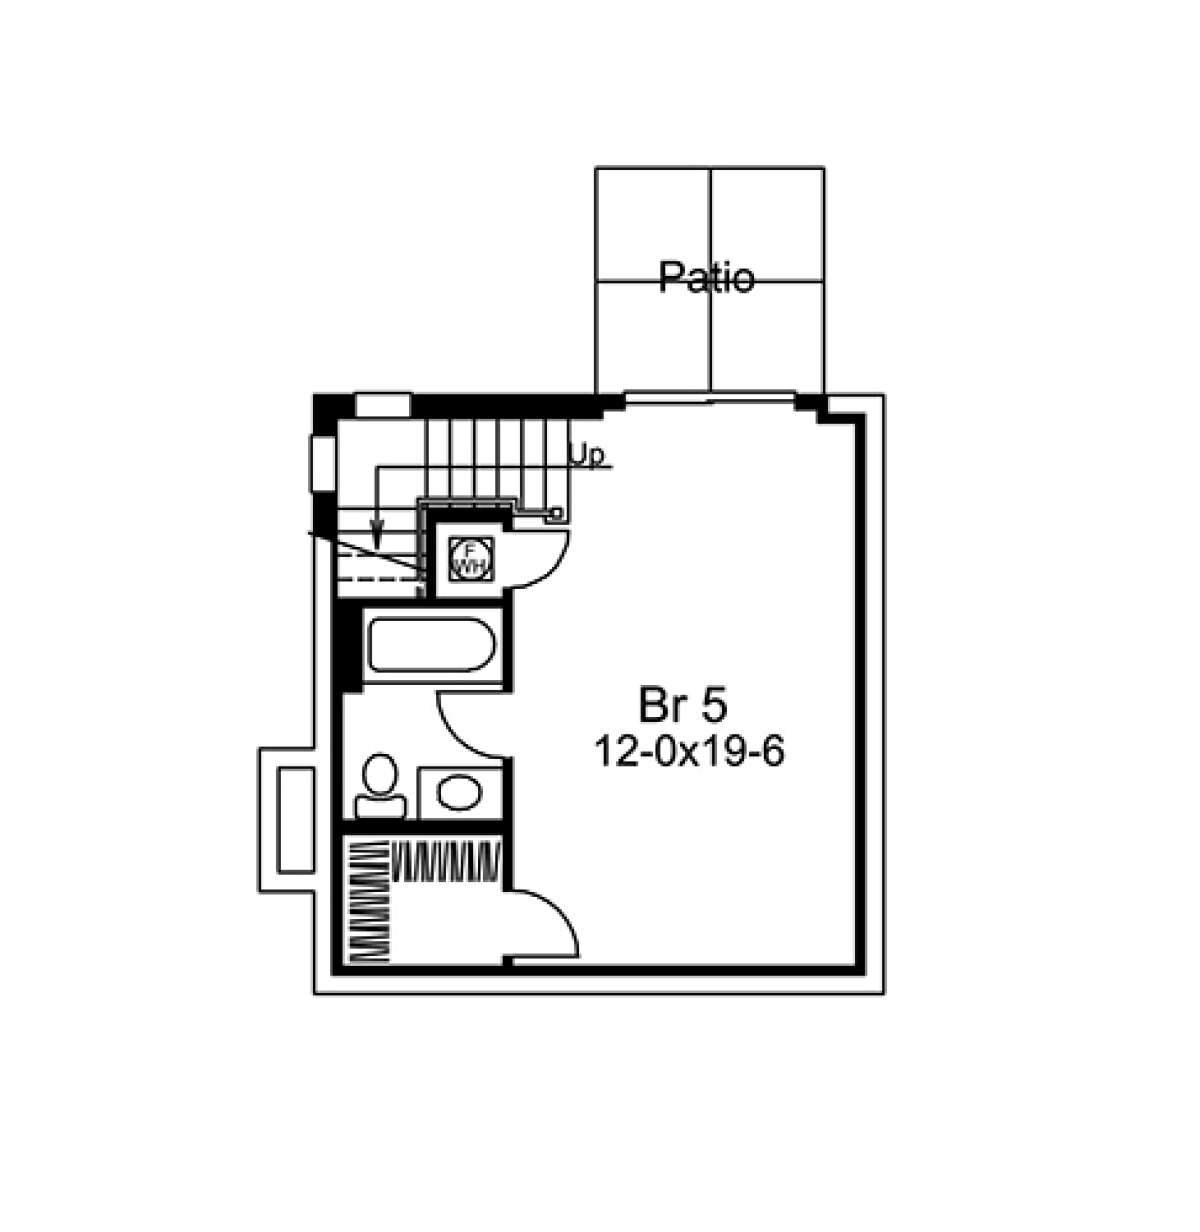 Basement Floor Plan for House Plan #5633-00258